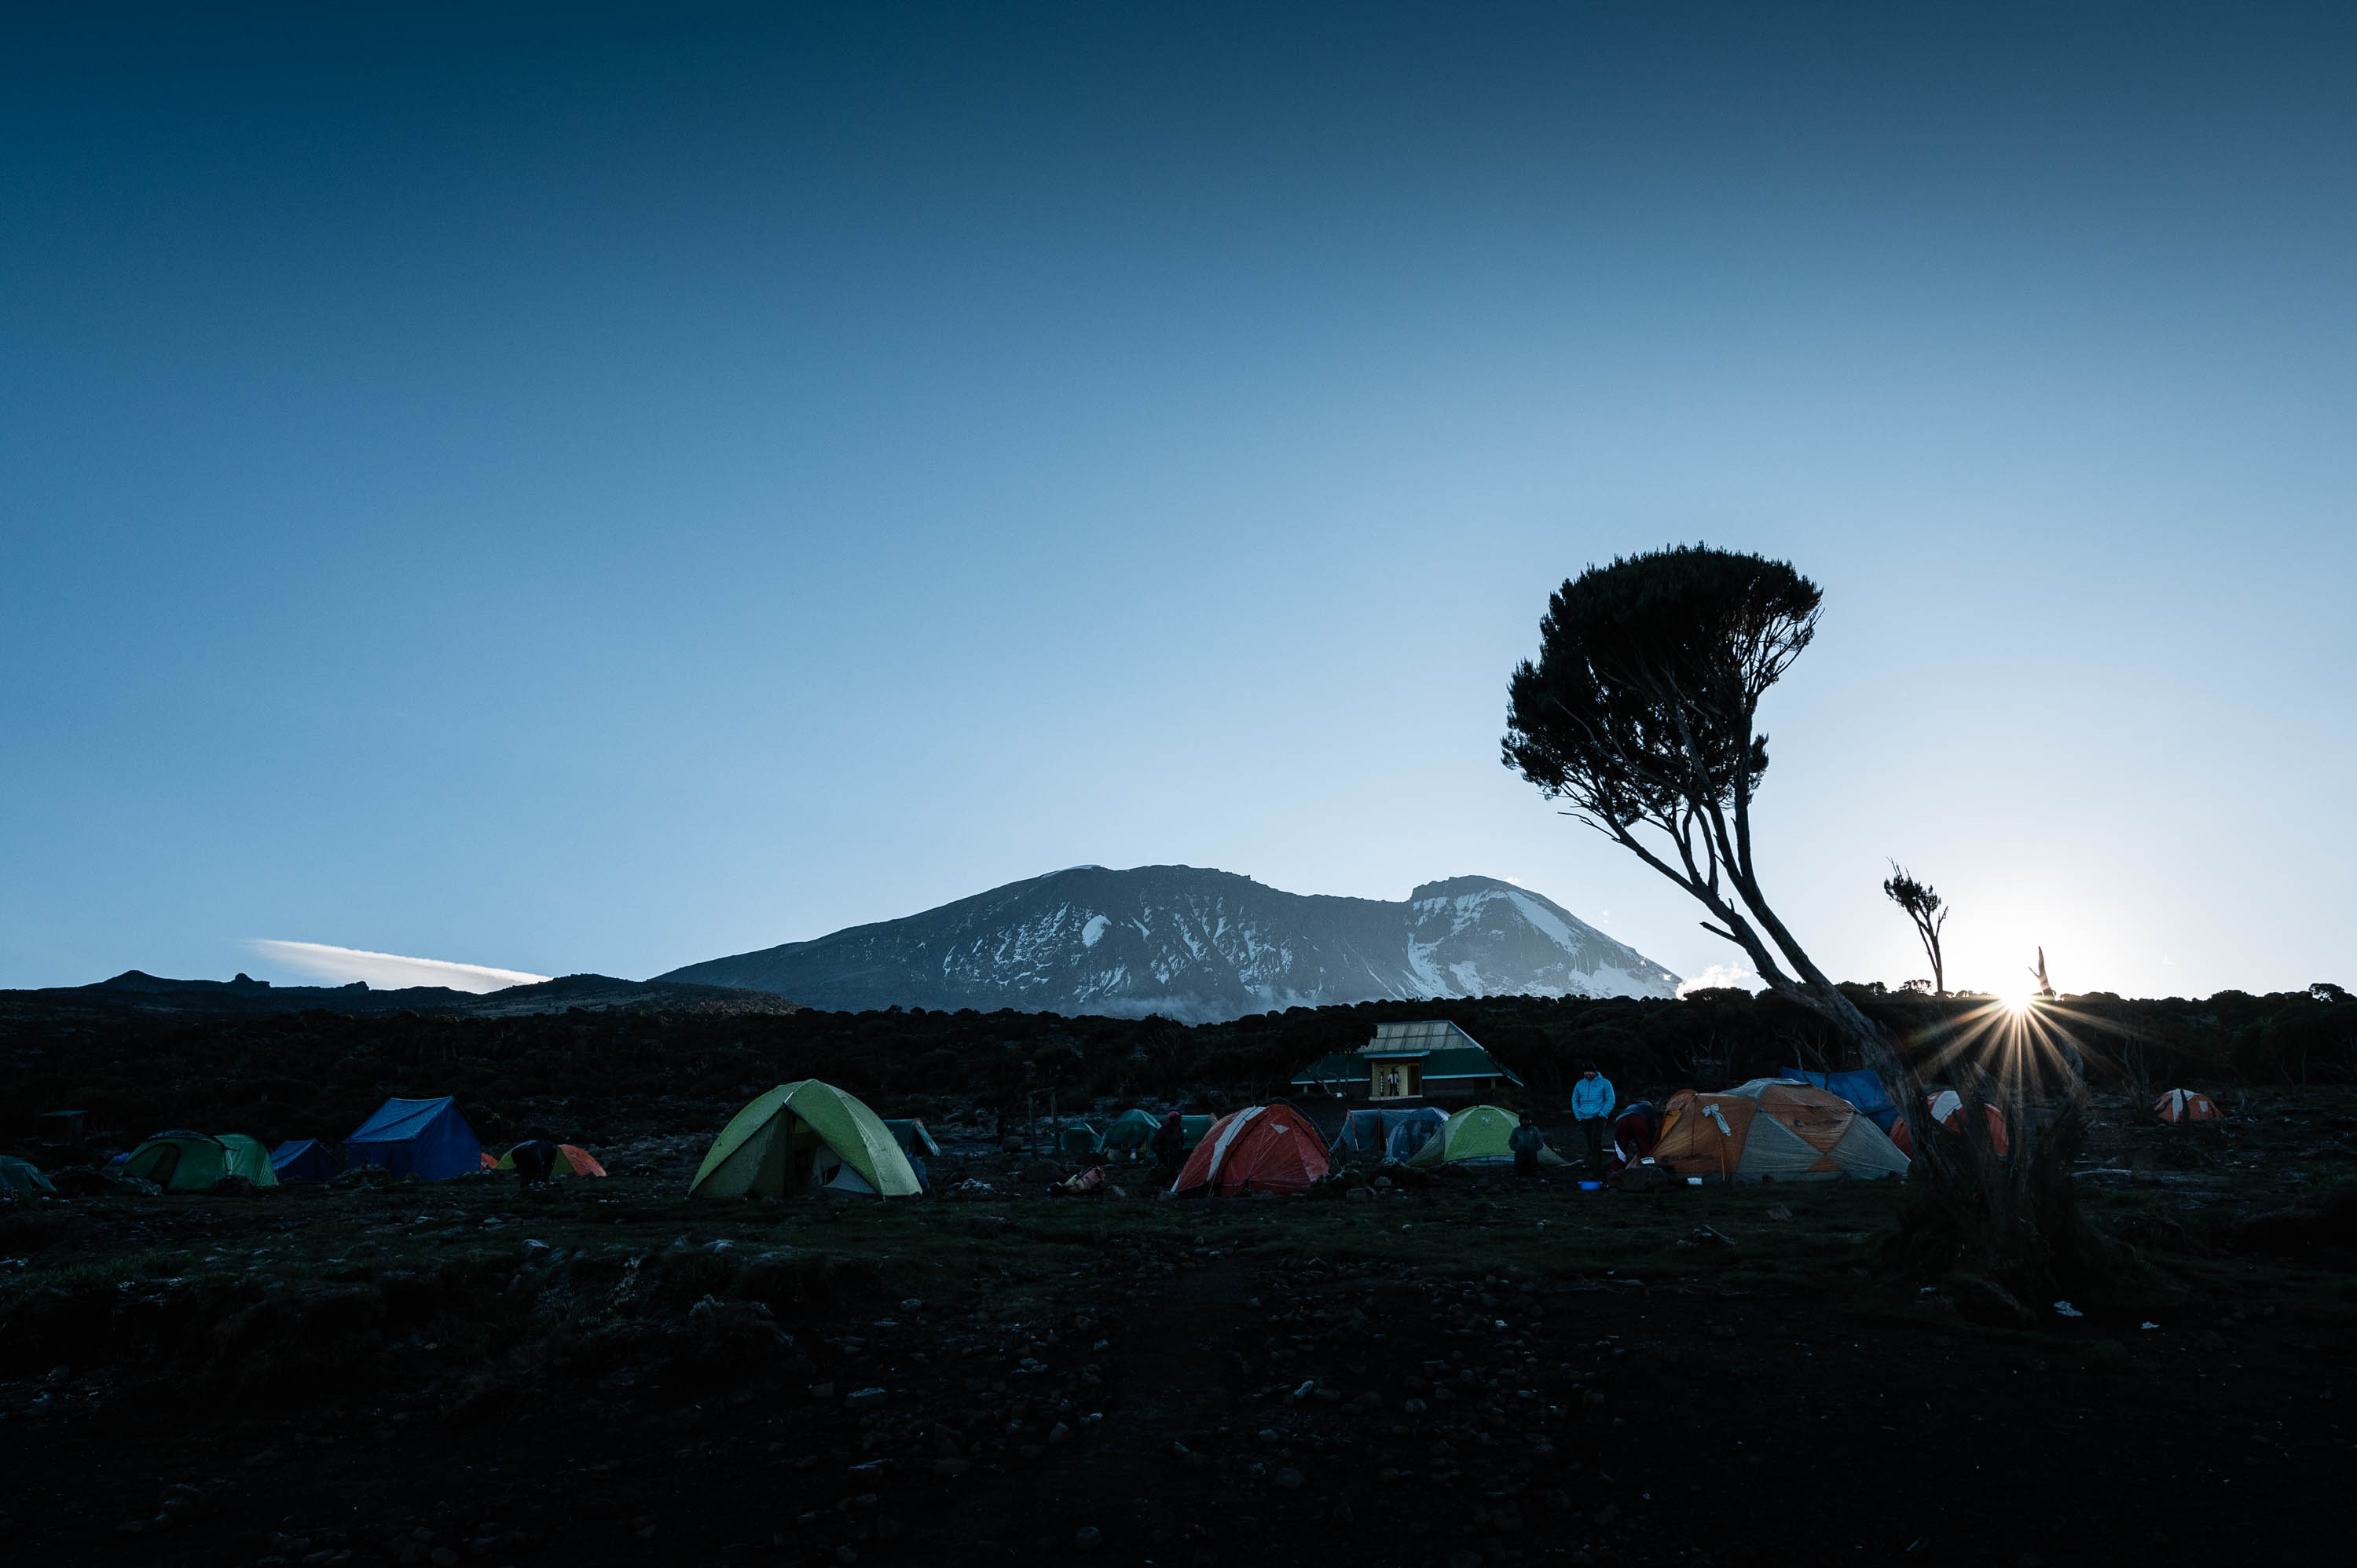 L’ascension du Kilimanjaro (5895m) : le toit de l’Afrique par la voie Machame !